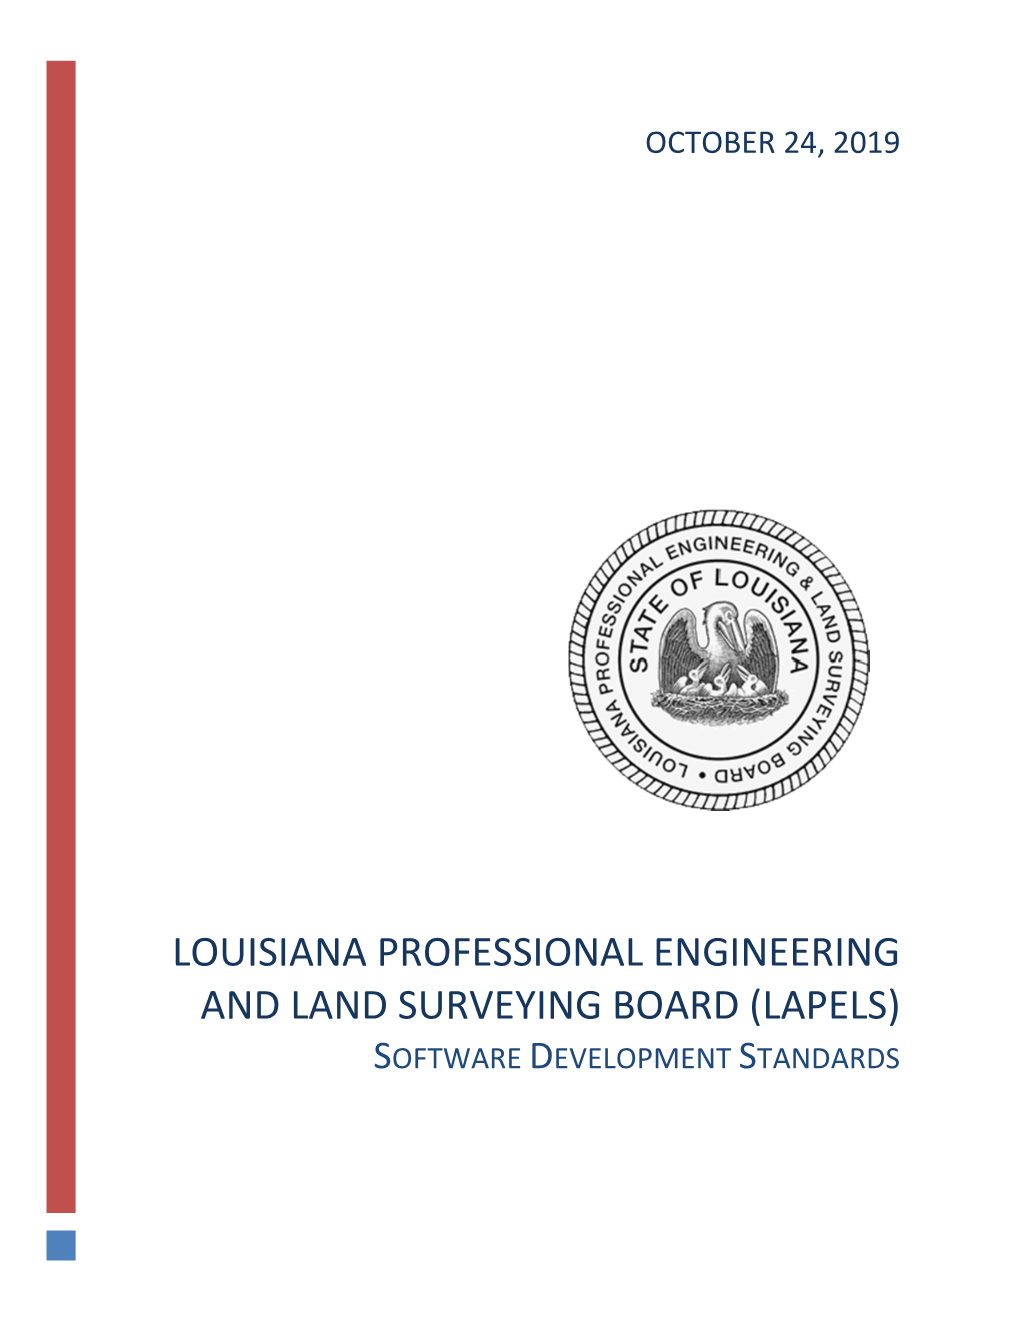 Lapels Software Development Standards Goal